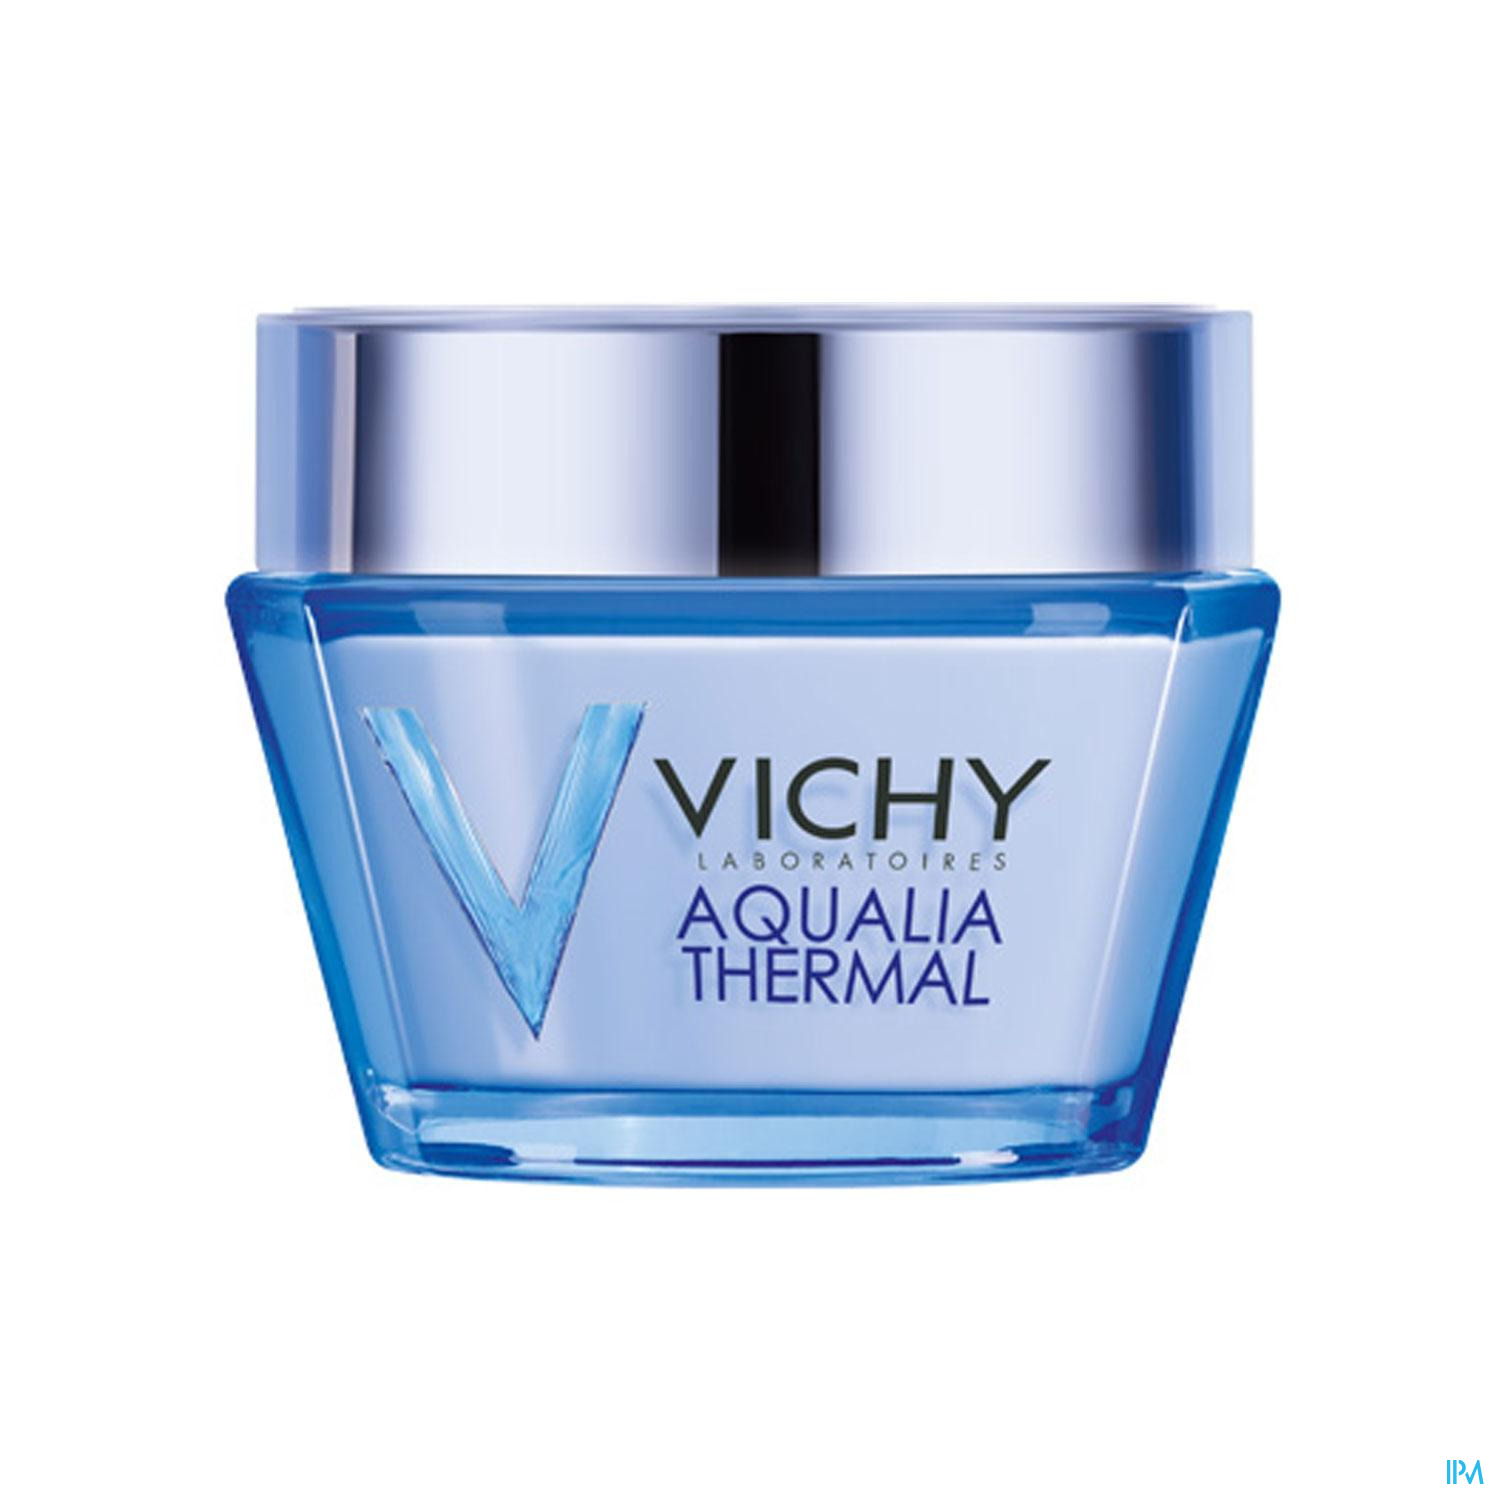 Vichy Aqualia Thermal Dyn. H. Light 40ml